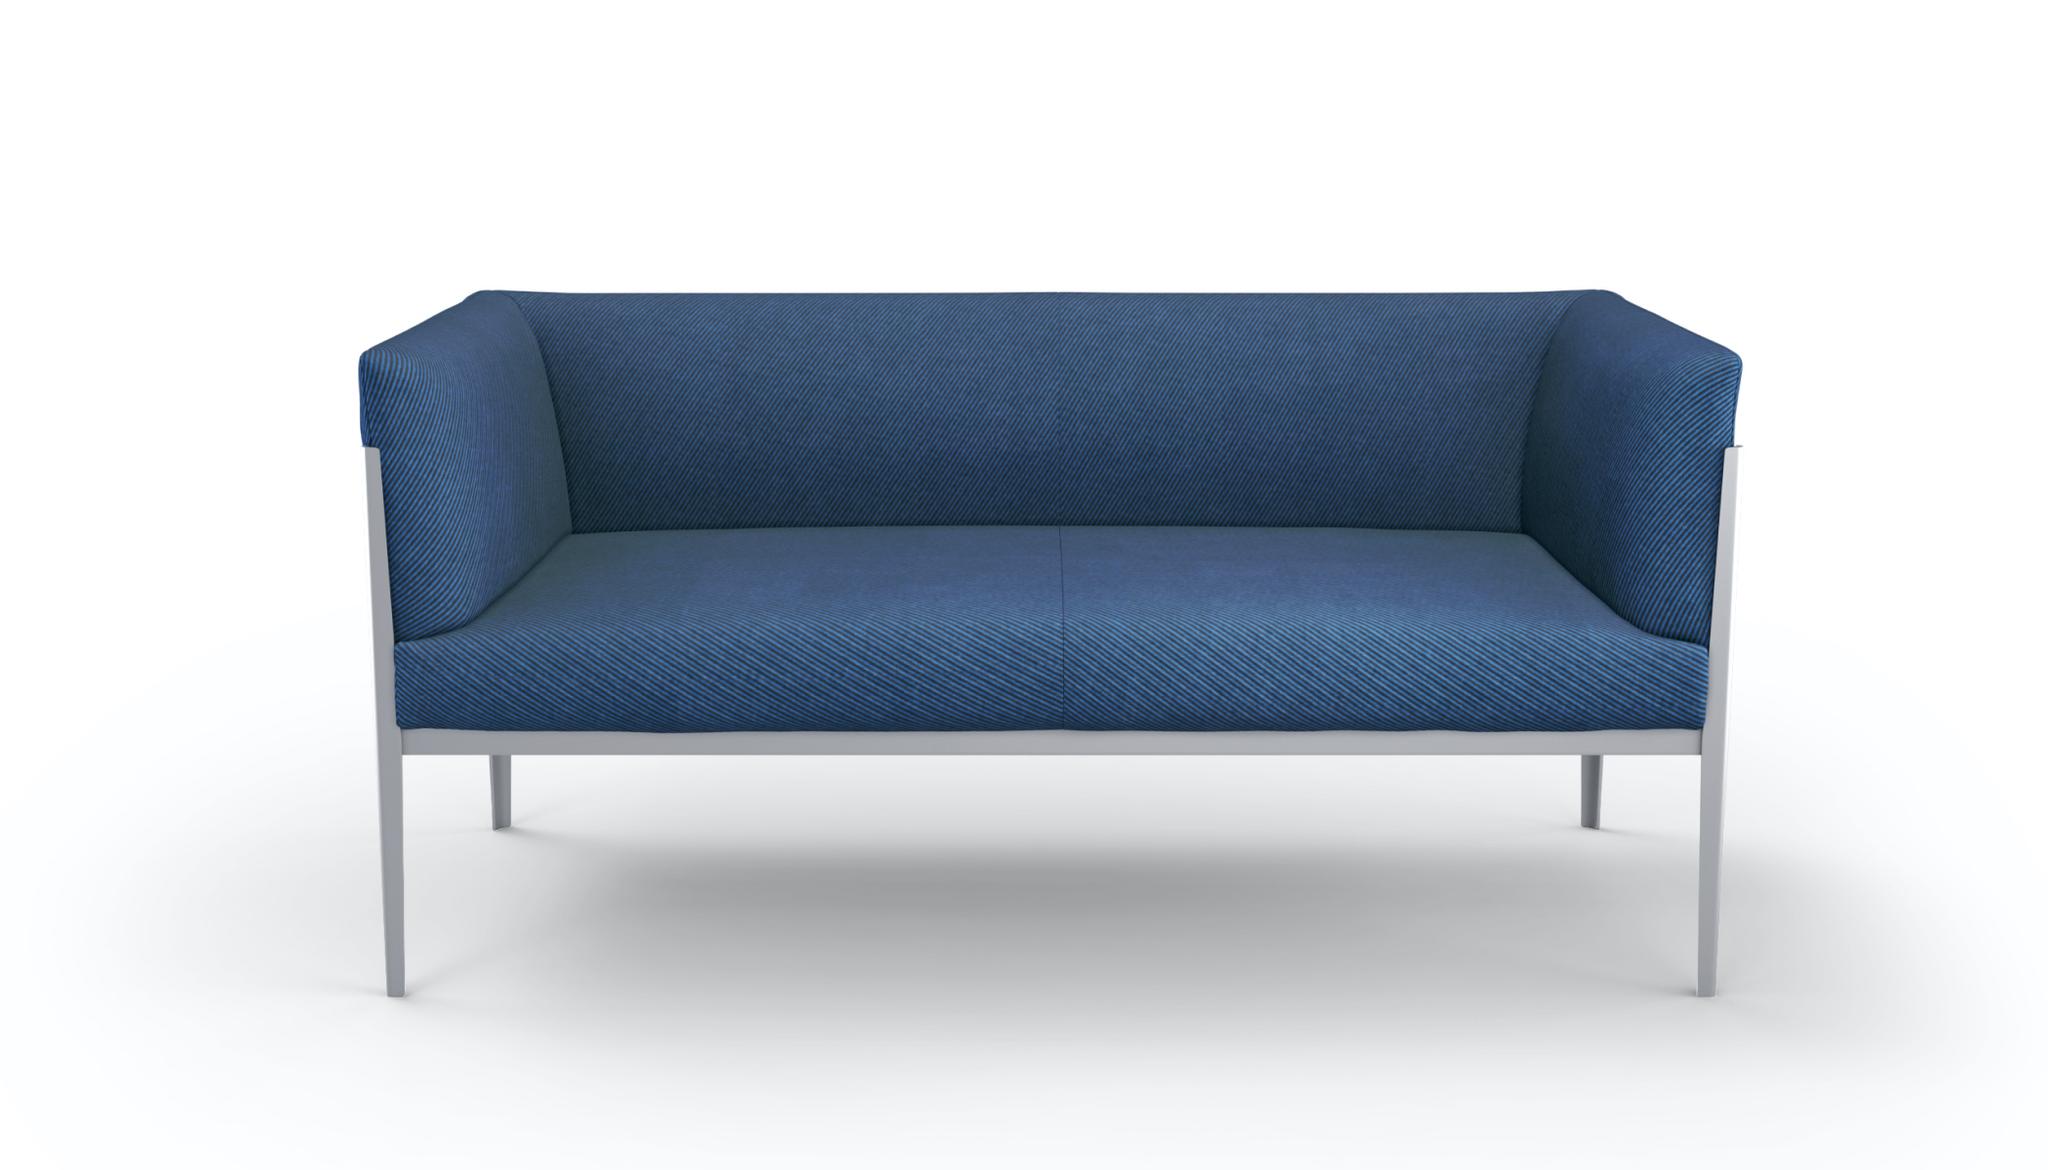 意大利家具CASSINA的COTONE SLIM sofa多人沙发 细节图